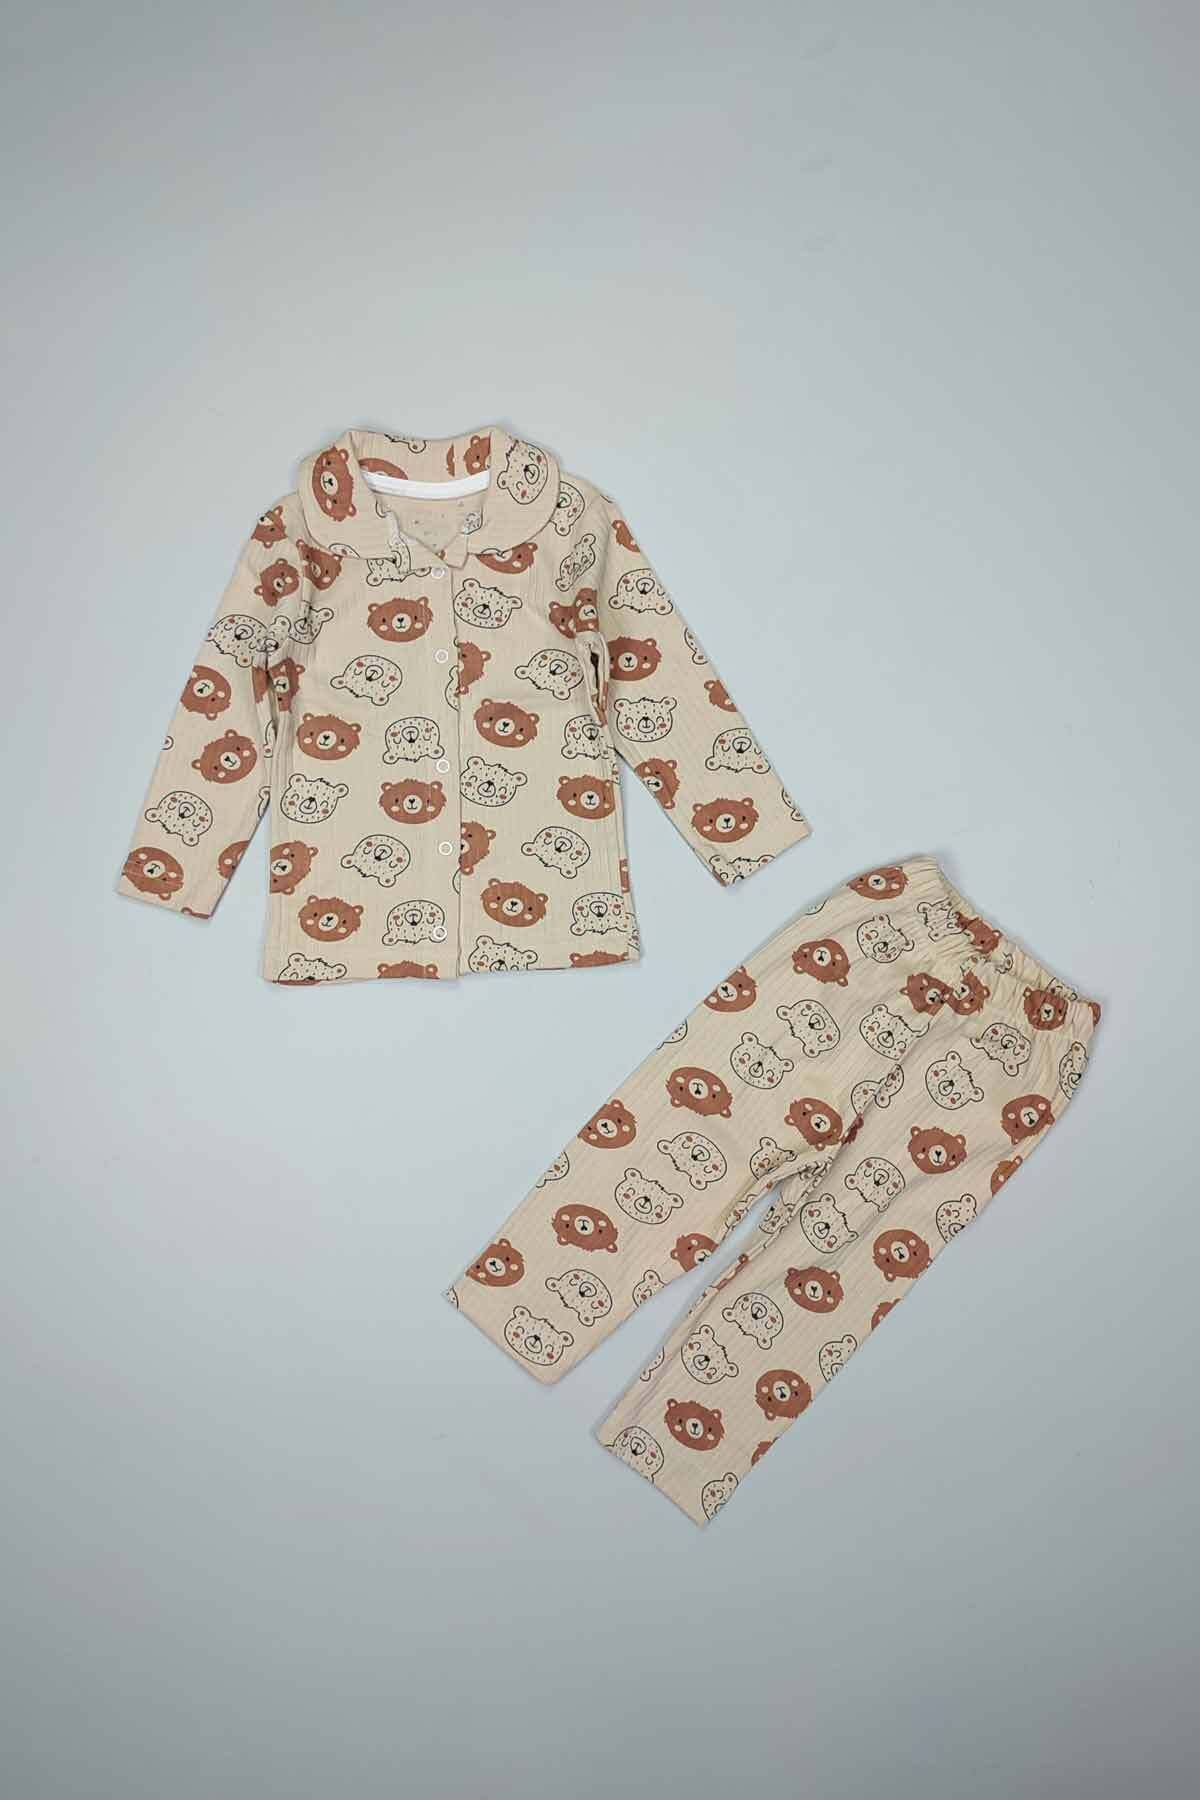 Peki Çocuk Bebek Yumusak Terletmez Nefes Alan Pamuklu Ayicik Desen Önden Çitçitli Pijama Takimi 14810